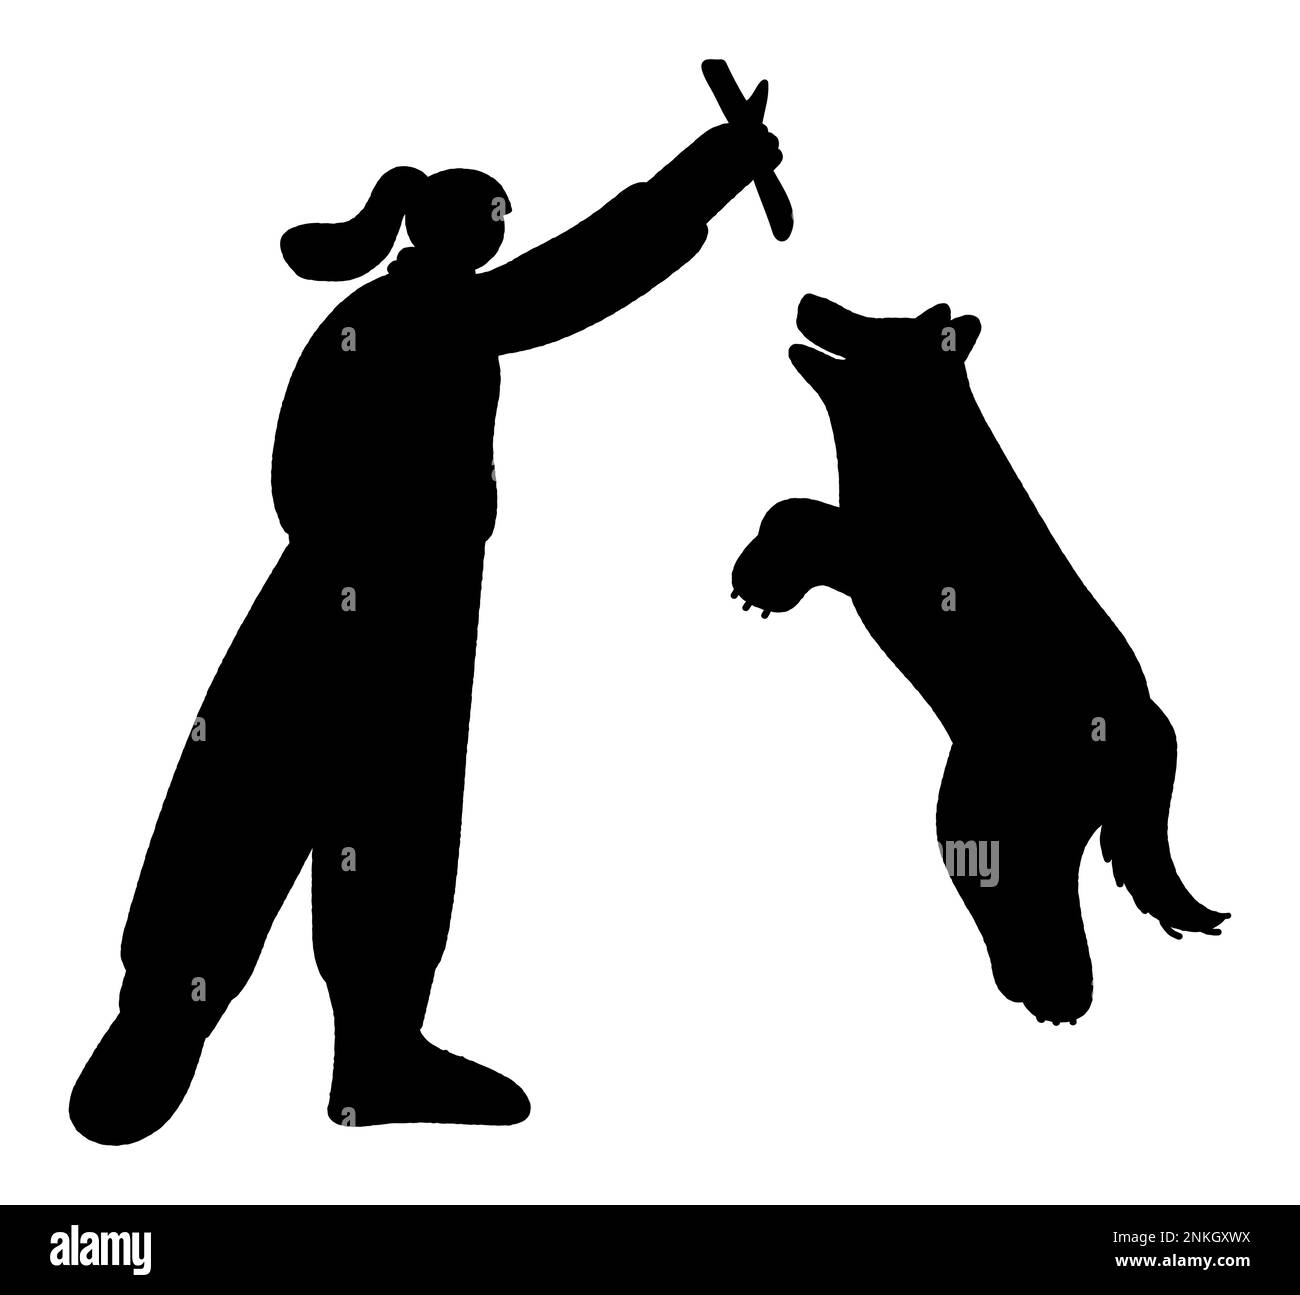 Donna che gioca con il cane con il bastone. Servizi di addestramento del cane o del riparo, illustrazione del vettore disegnata a mano per animale Illustrazione Vettoriale